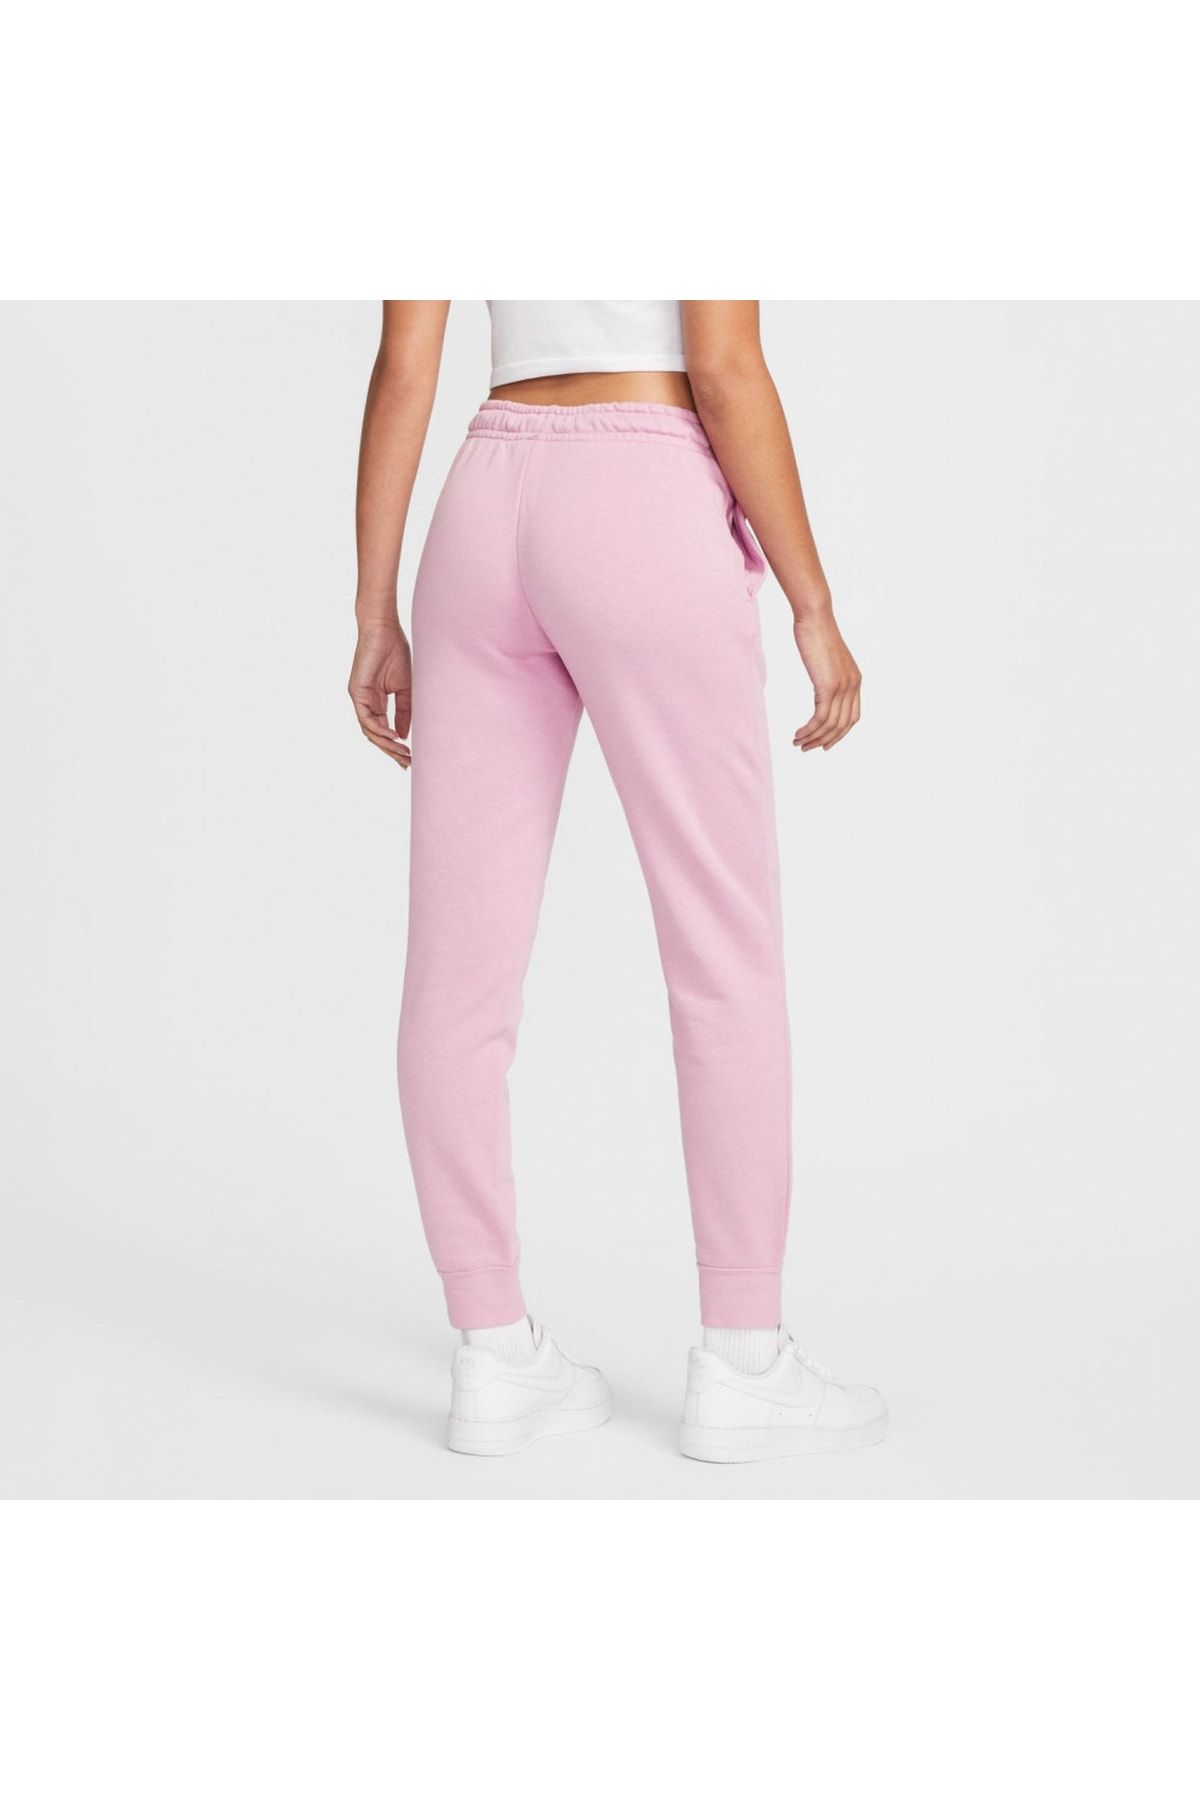 Nike Sportswear Essential Fleece Women's Pink Sweatpants - Trendyol